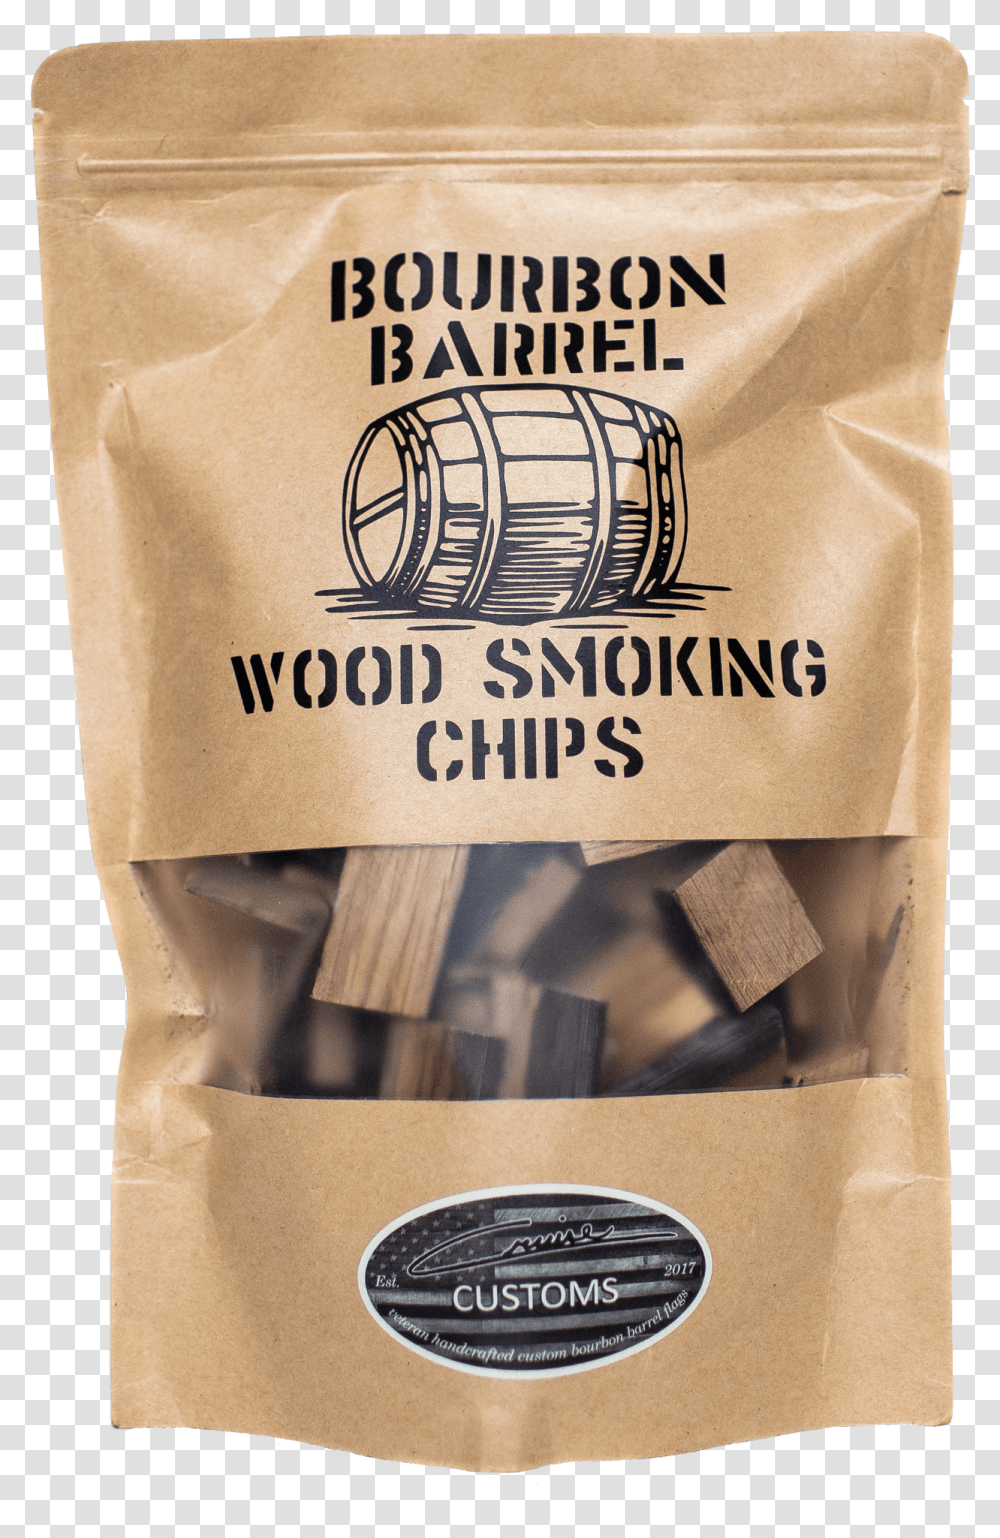 Bourbon Barrel Wood Chips Packaging And Labeling, Flour, Powder, Food, Bag Transparent Png